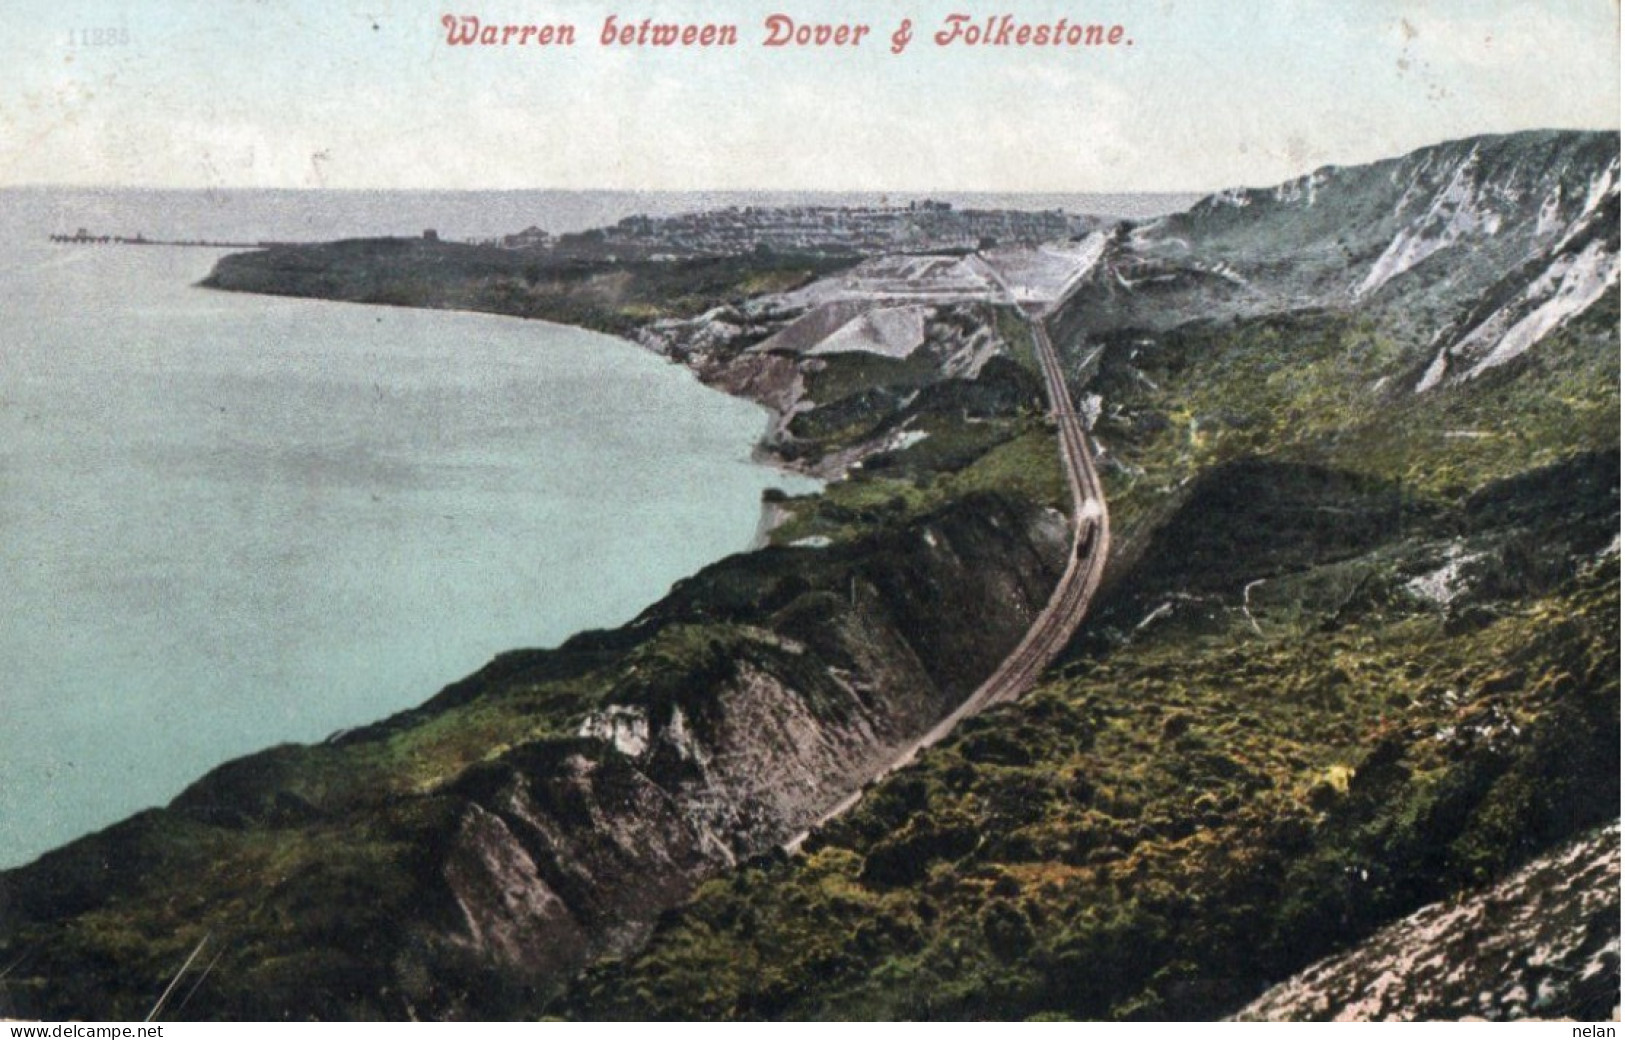 WARREN BETWEEN DOVER FOLKESTONE - Dover